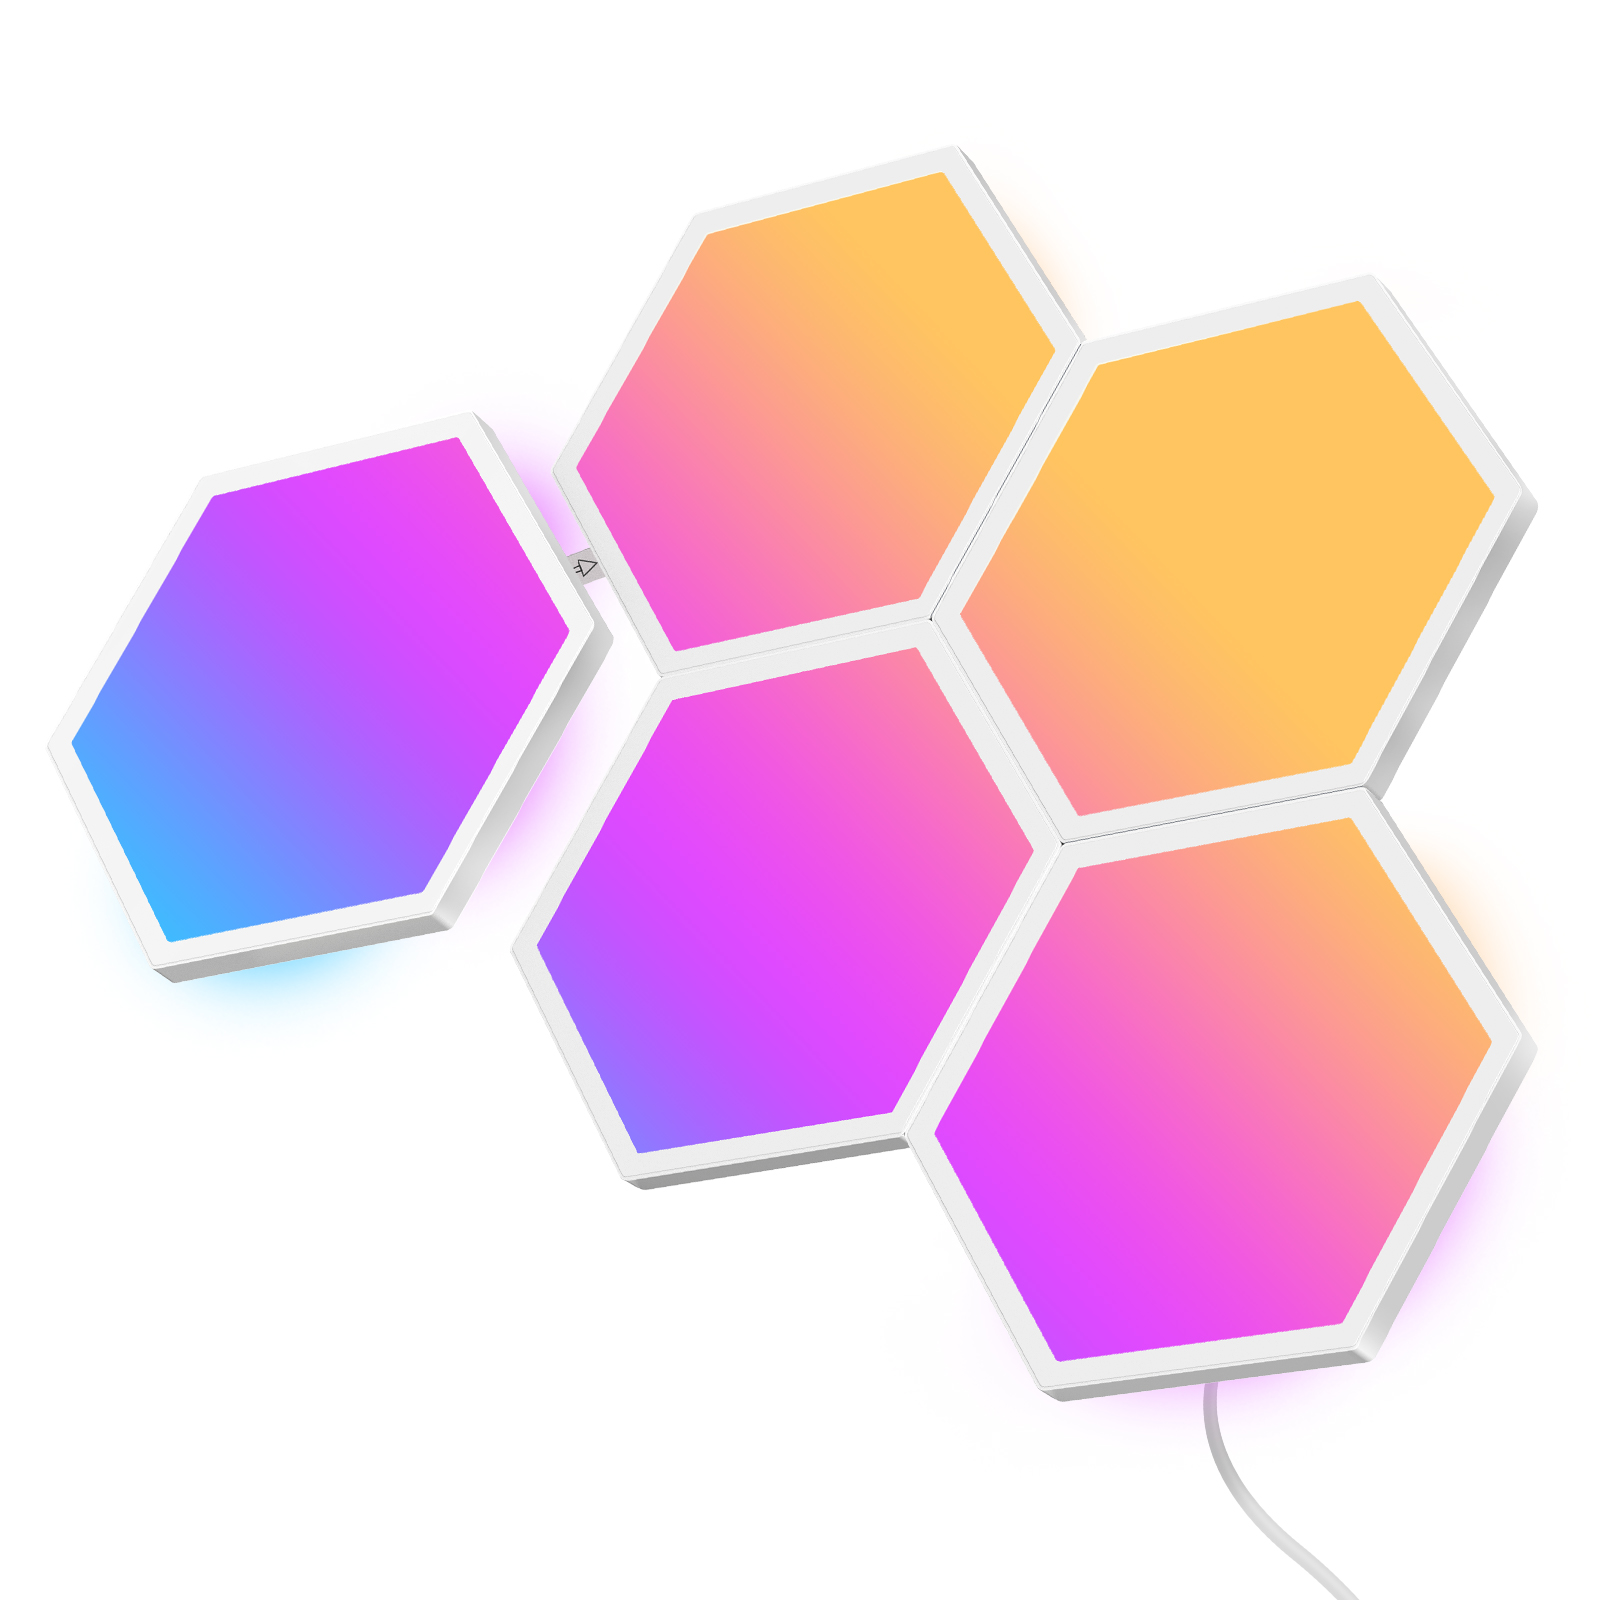 Lichtpanele) Hexa Glide GOVEE LED-Panele (2 RGB Hexa Erweiterungspaket